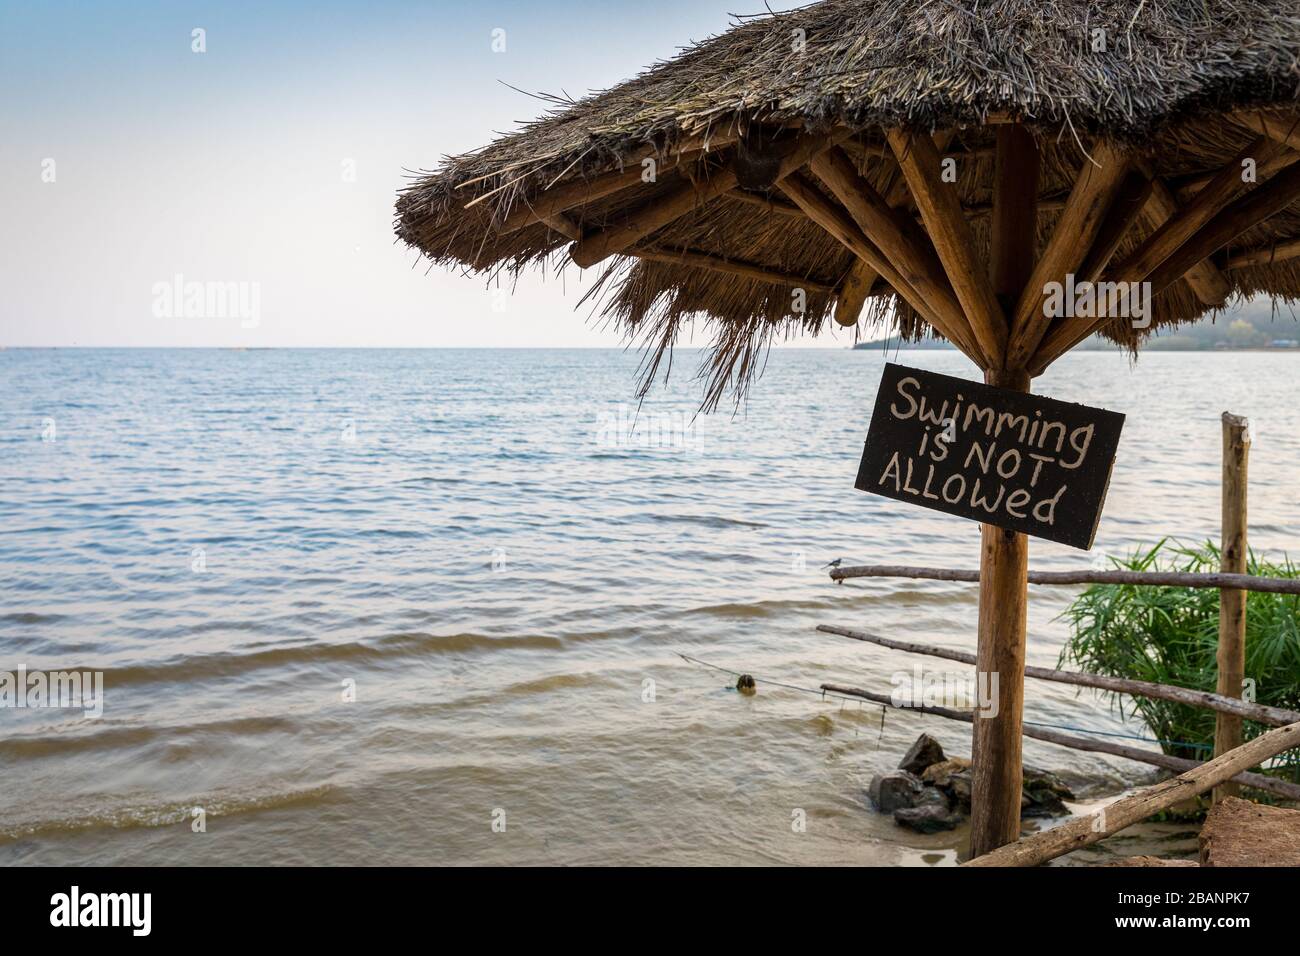 A sign warns no swimming allowed at 2 Friends beach resort, Lake Victoria, Uganda Stock Photo